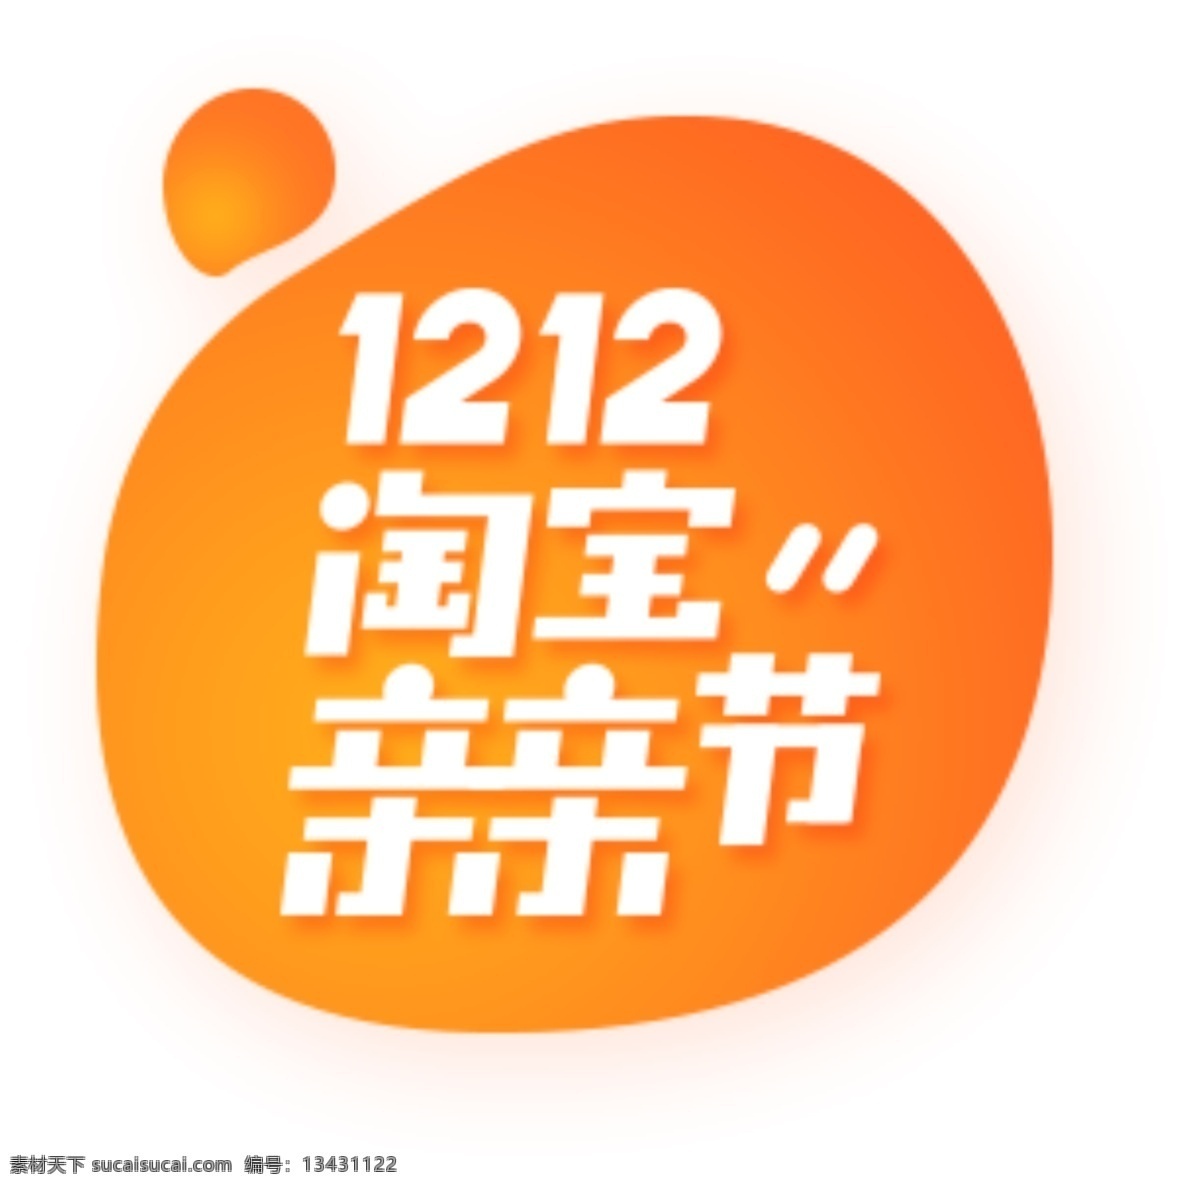 1212 亲亲 节 logo 亲亲节